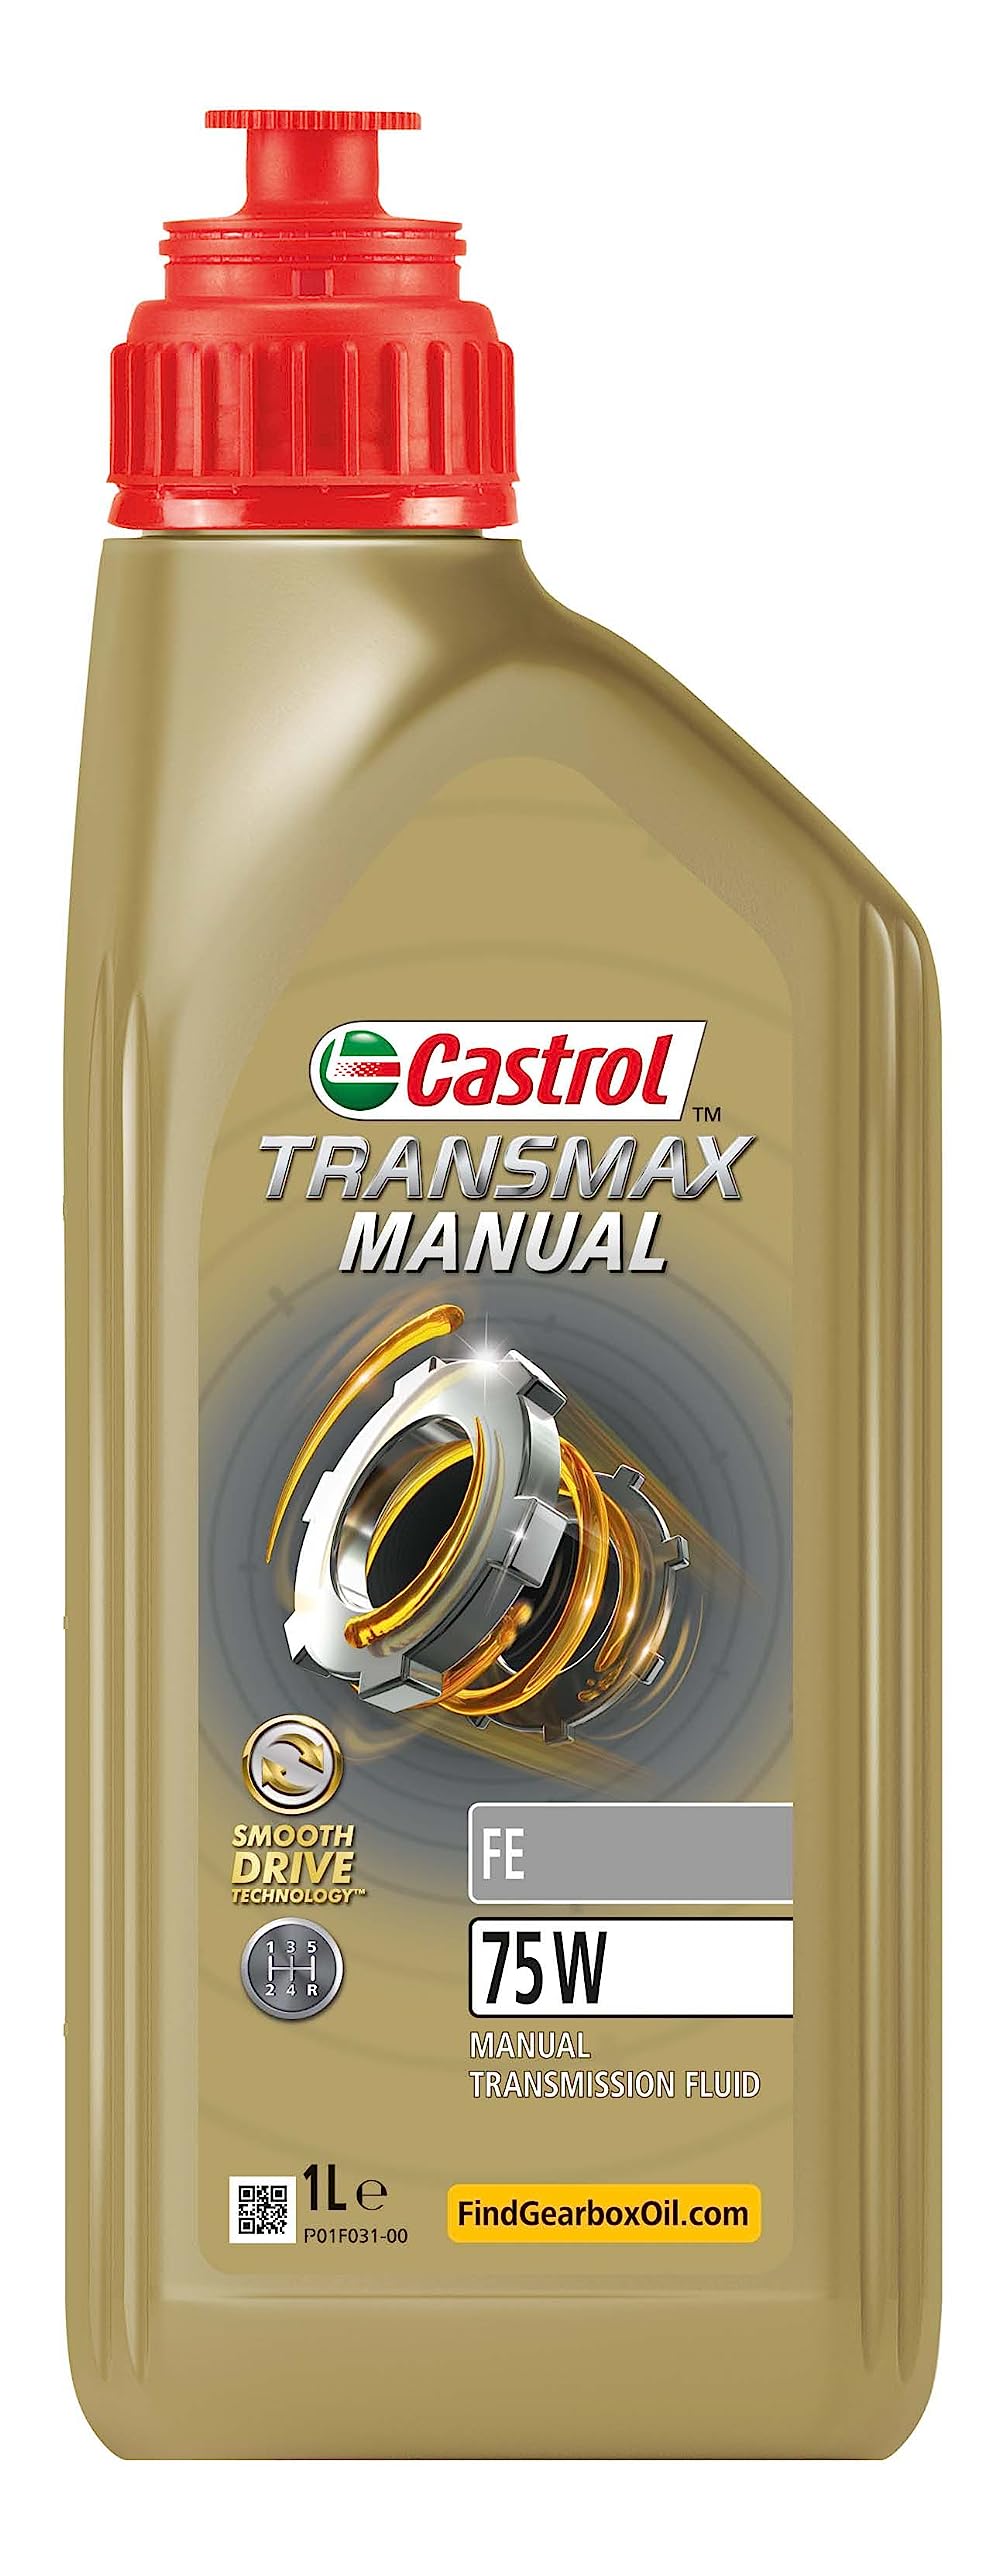 Castrol TRANSMAX Manual FE 75W Schaltgetriebeöl, 1L von Castrol